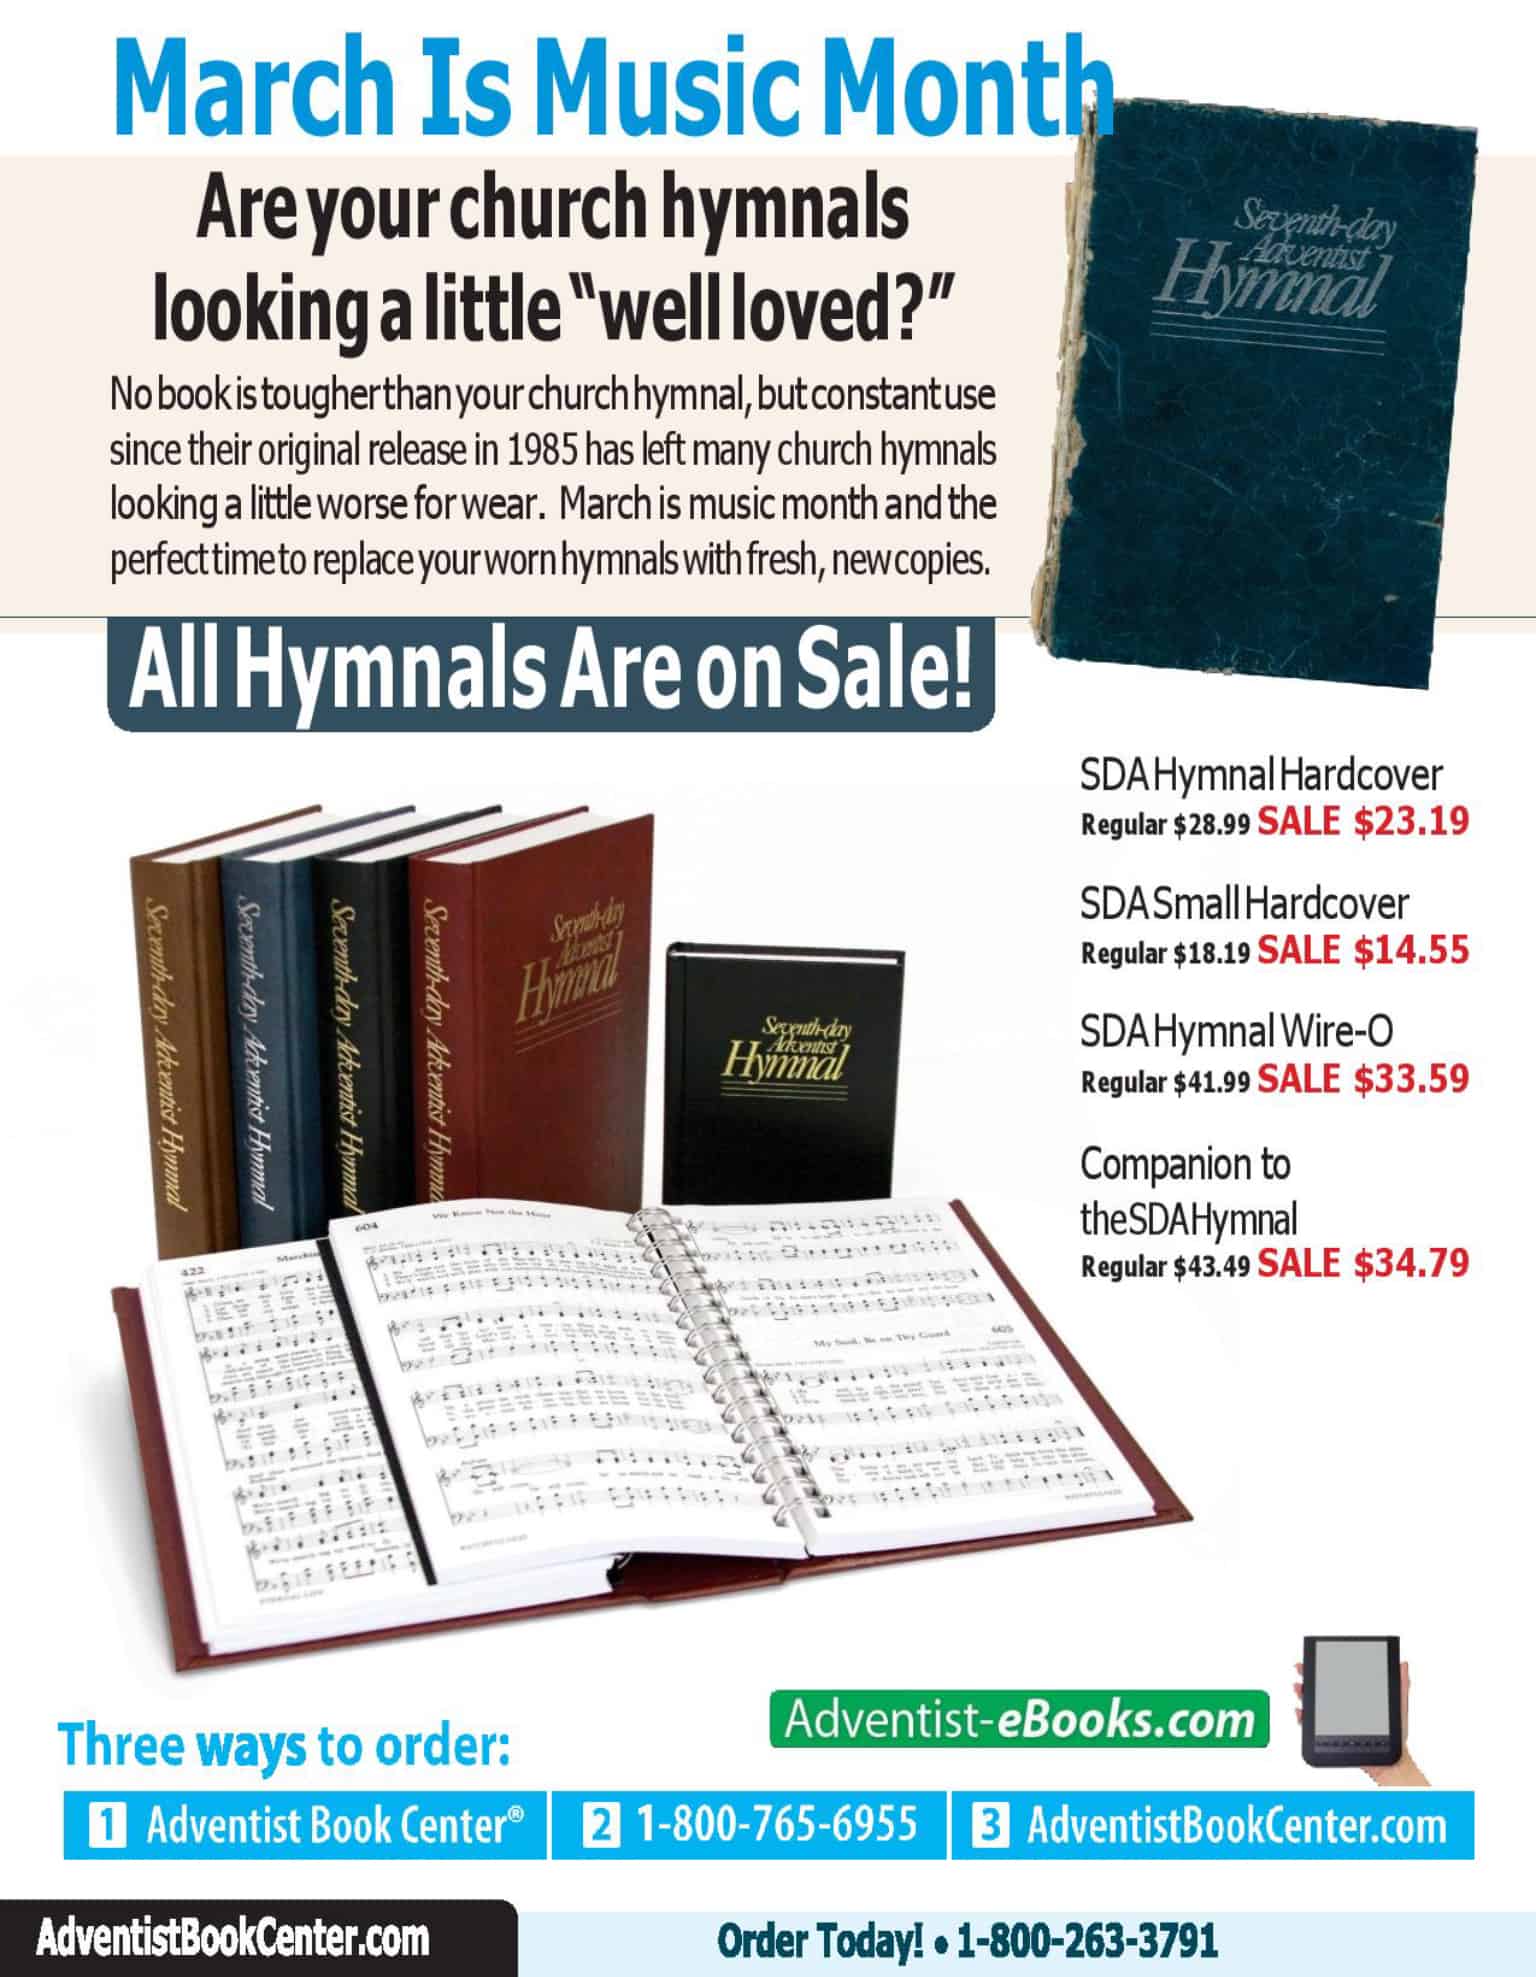 Hymnal sales